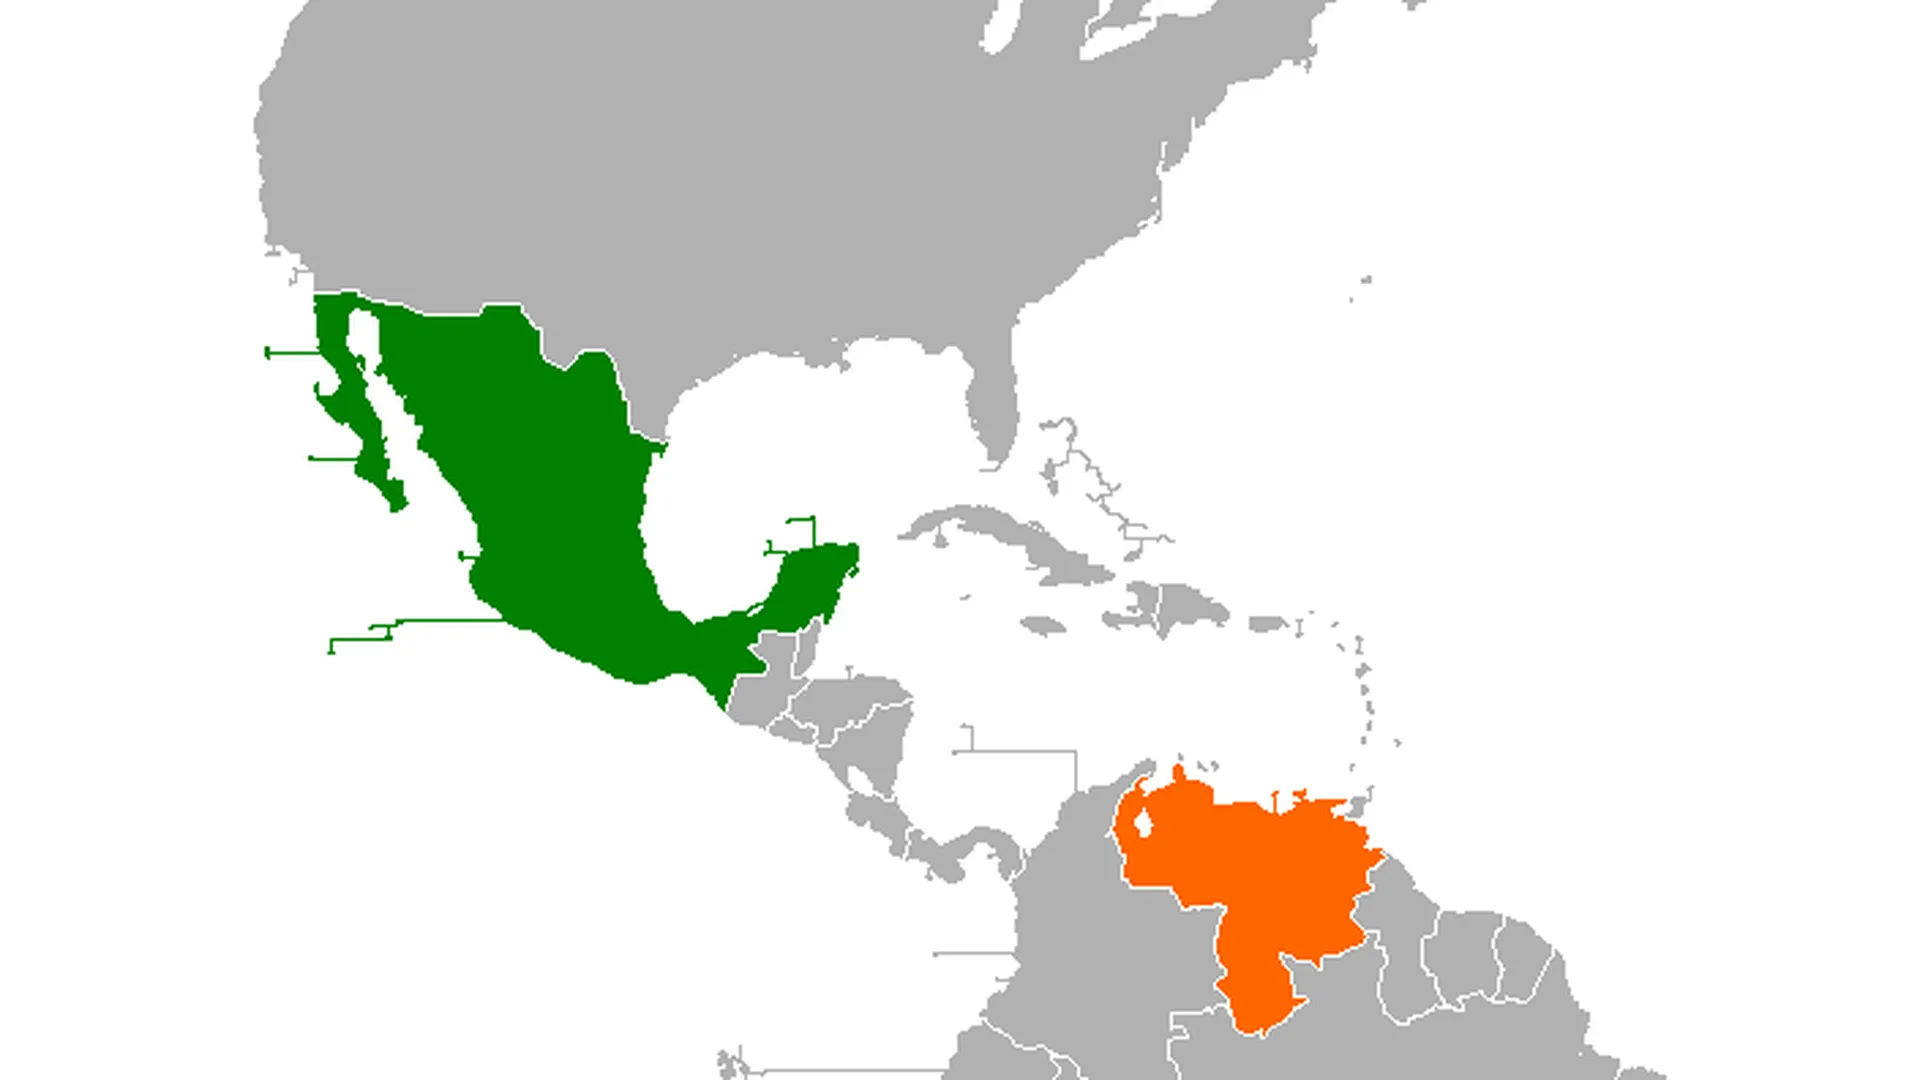 Венесуэла (отмечена оранжевым цветом) и Мексика (отмечена зеленым). Венесуэльцы пересекали границы Никарагуа и Гватемалы и затем попадали на территорию Мексики, двигаясь к пограничному посту округа Брукс, самого ближнего американского штата — Техас